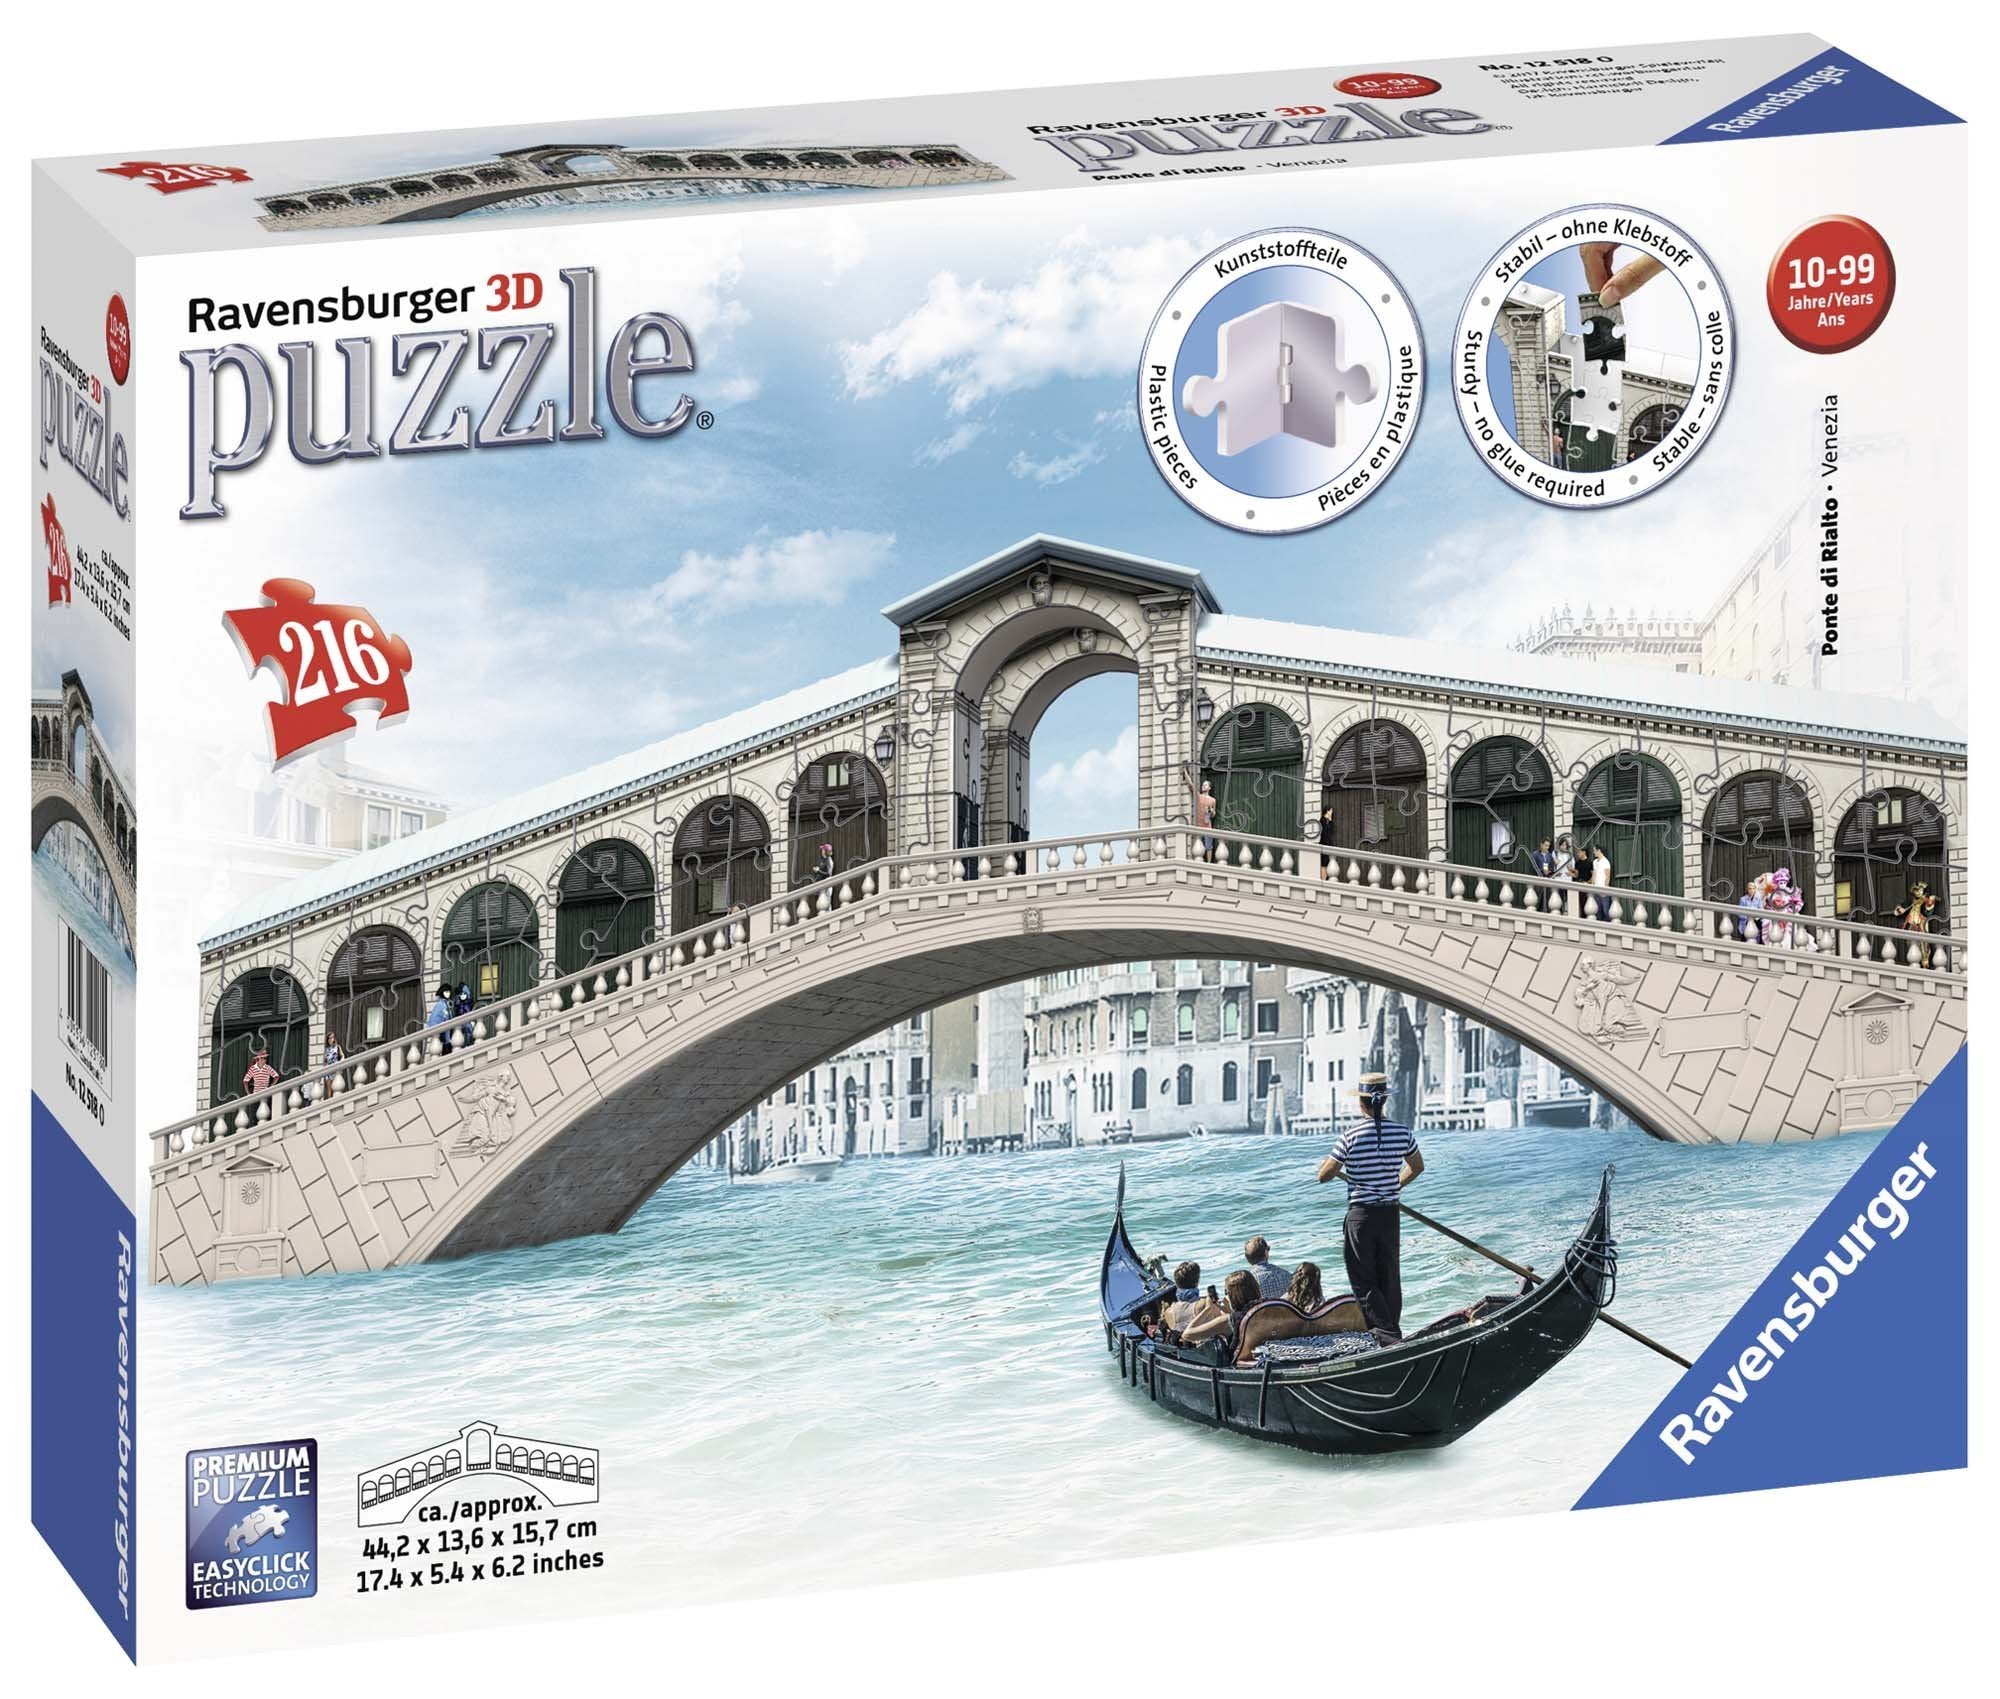 Venices Rialto Bridge 3D Puzzle 216pc